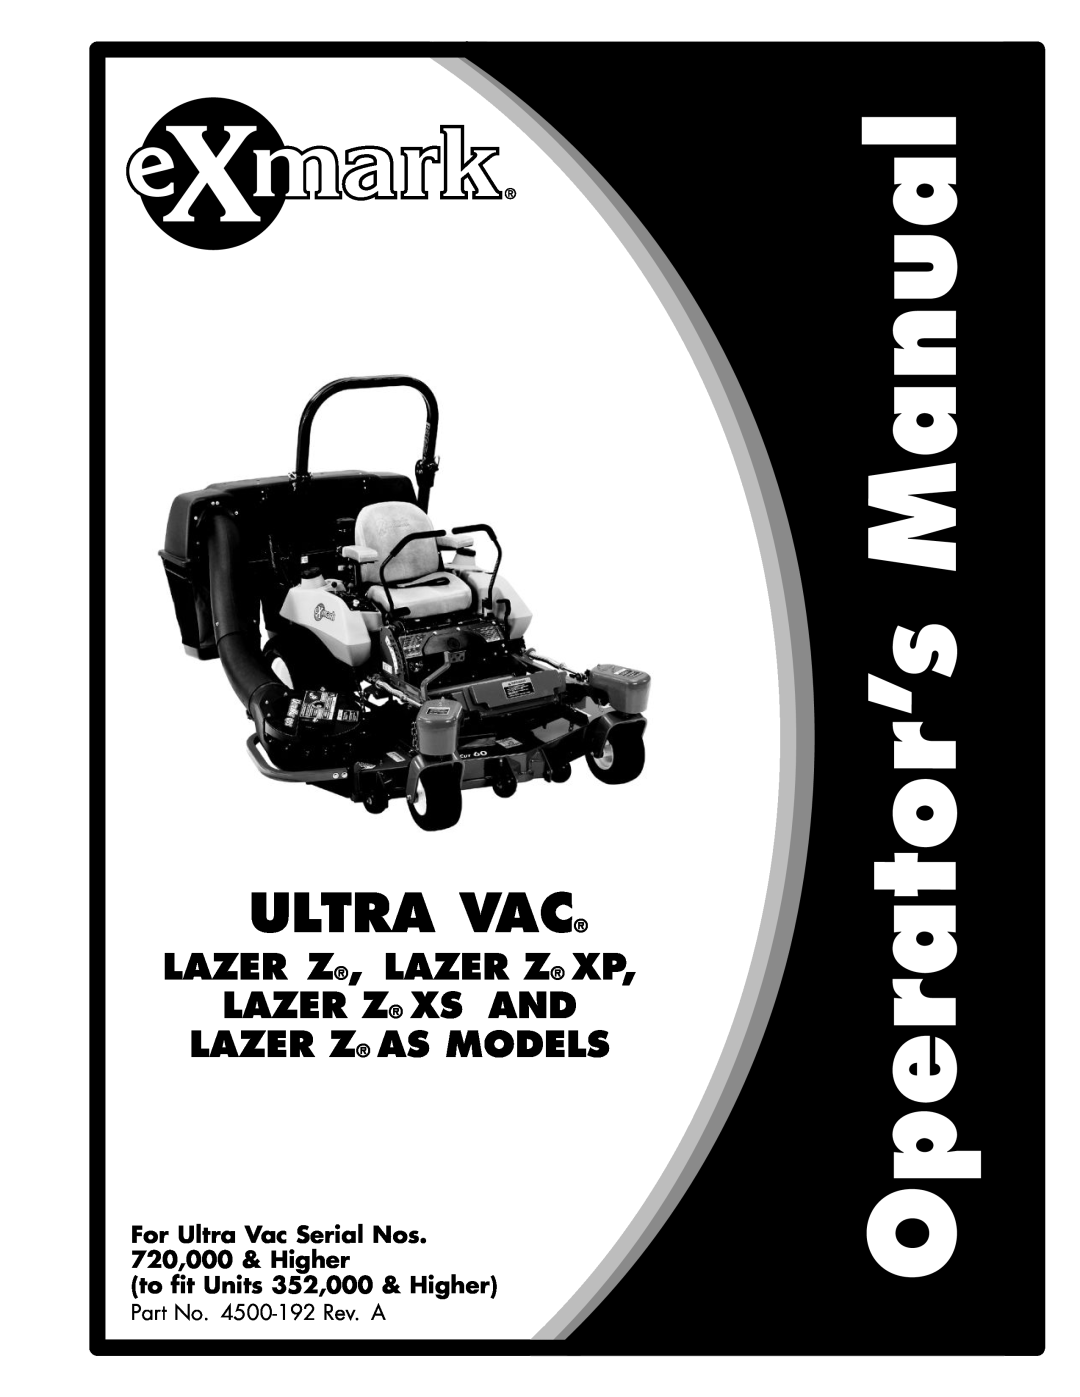 Exmark Lazer Z AS manual Ultra Vac, Lazer Z, Lazer Z Xp Lazer Z Xs And Lazer Z As Models, to fit Units 352,000 & Higher 